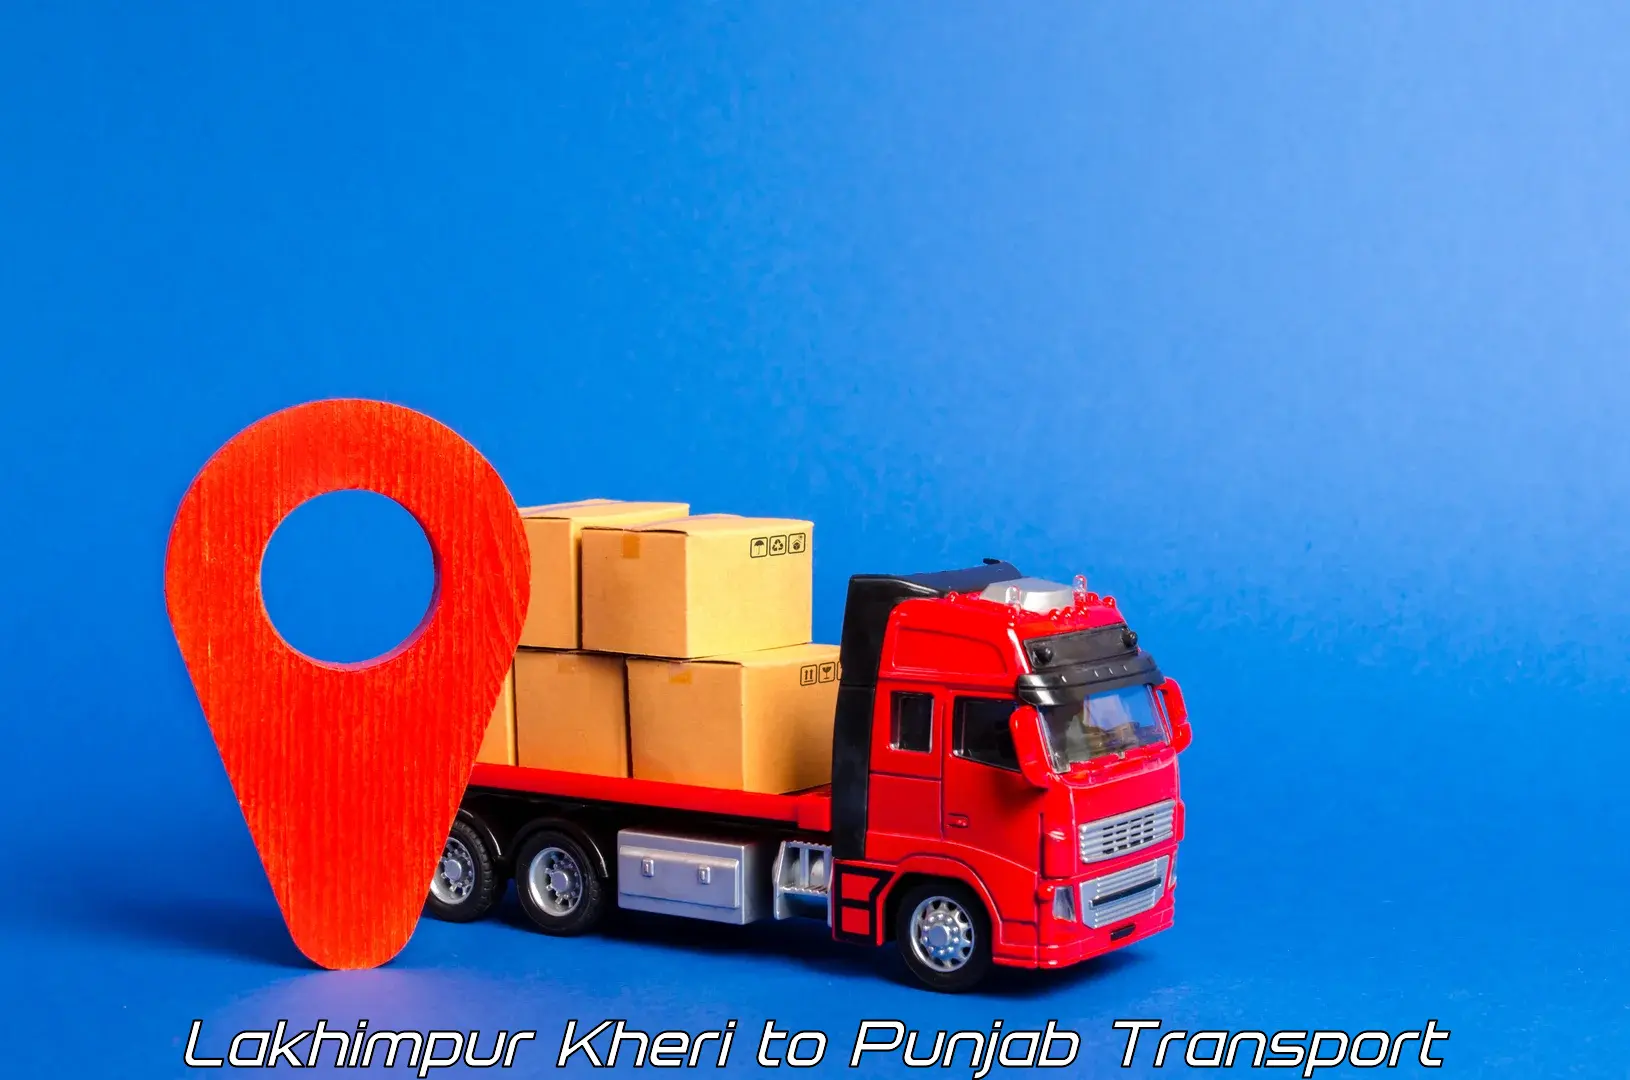 Nationwide transport services Lakhimpur Kheri to Hoshiarpur